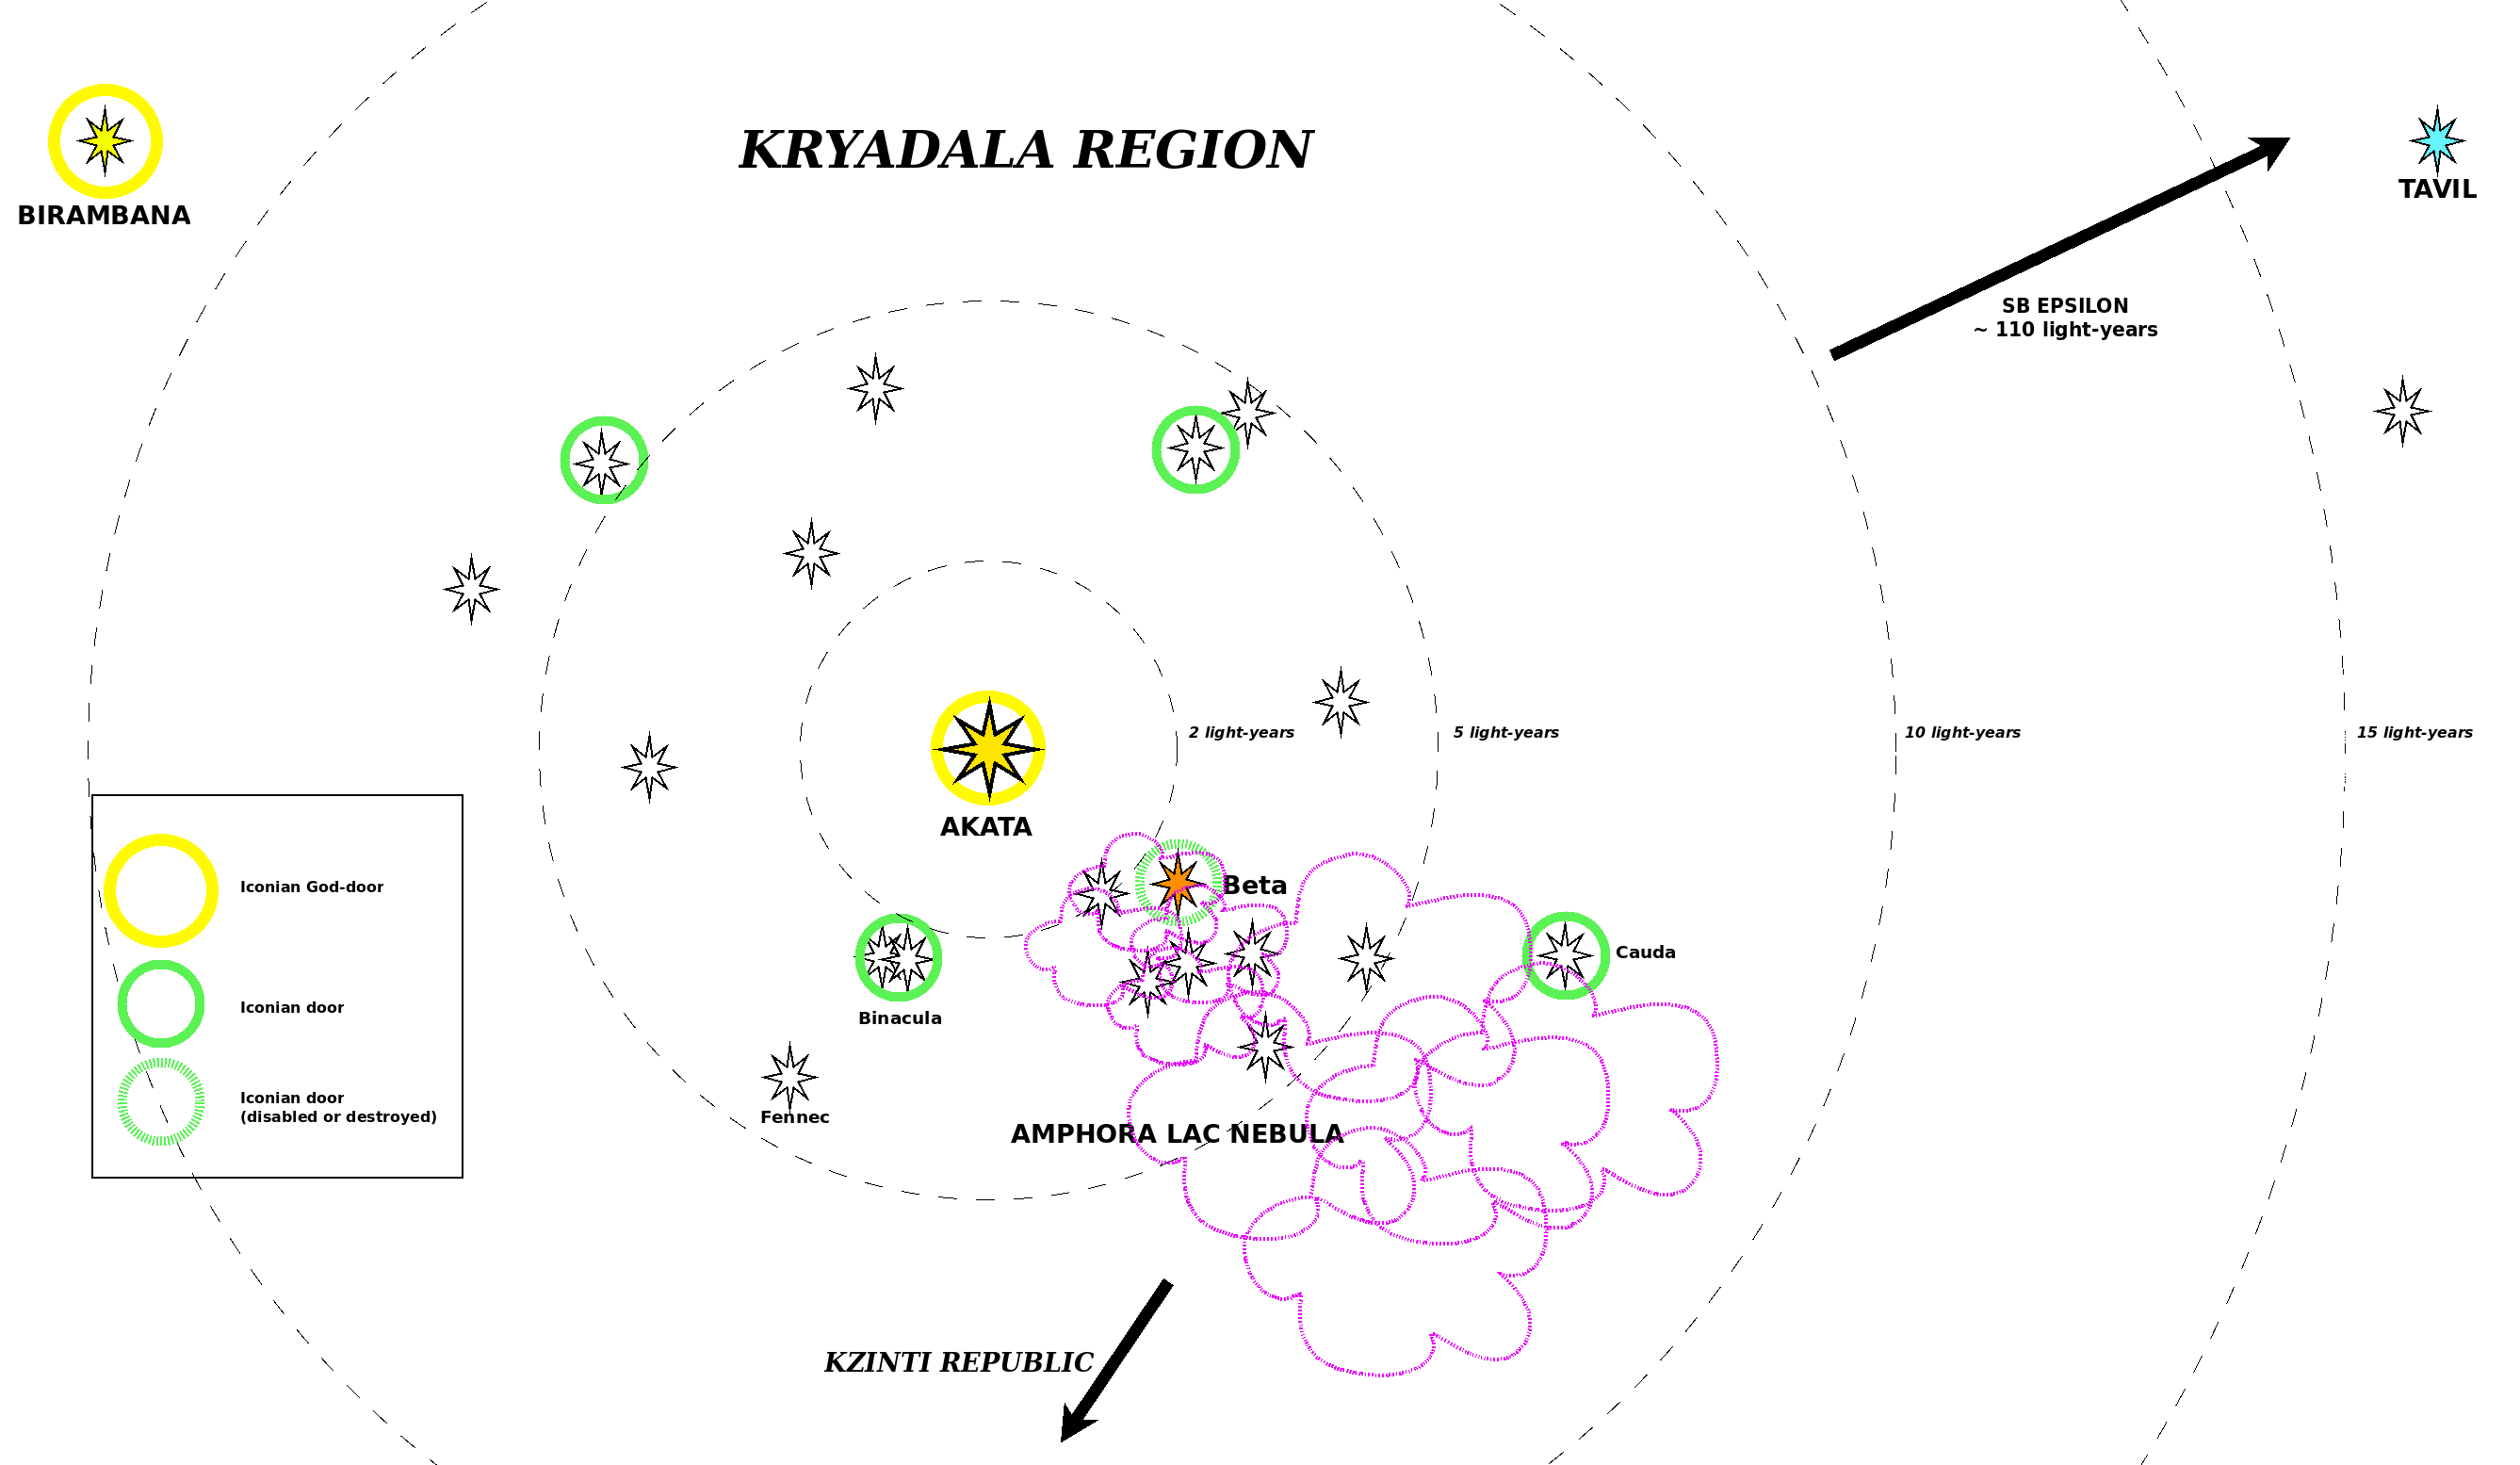 Map of the Kryadala region